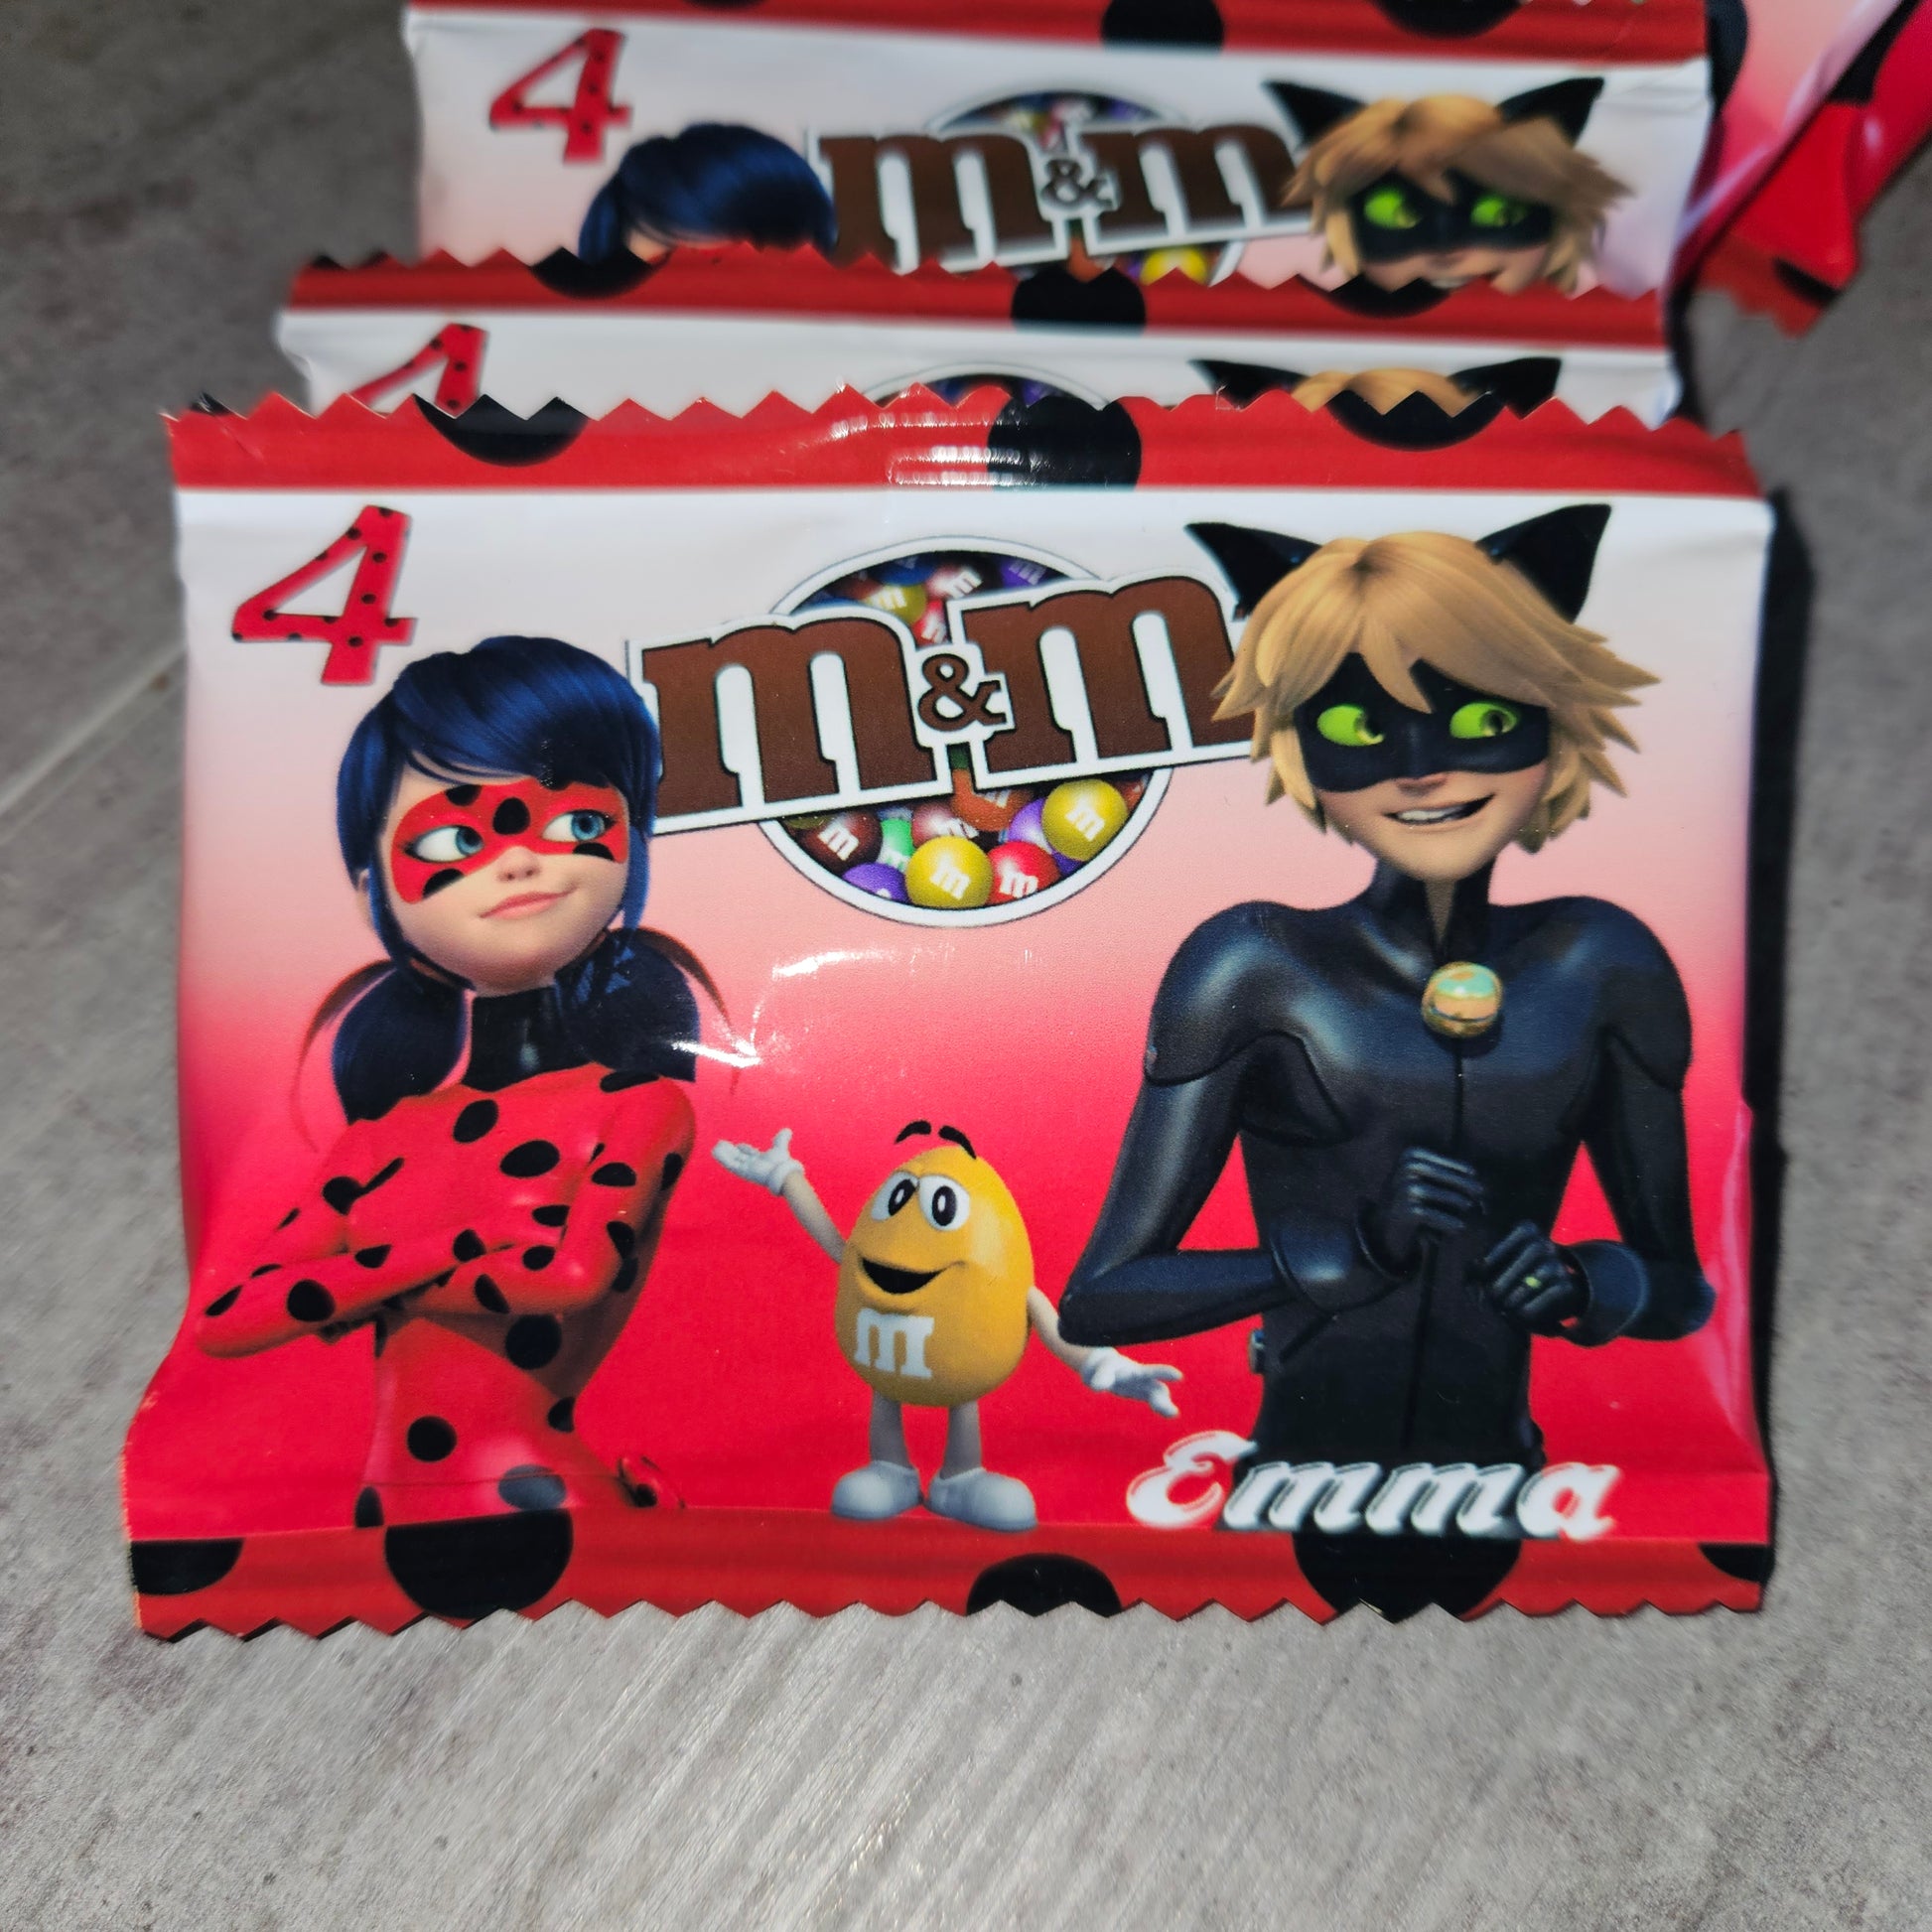 Nutella Personnalisé Avec Autocollants Super Héros Dans Une Boîte En Carton